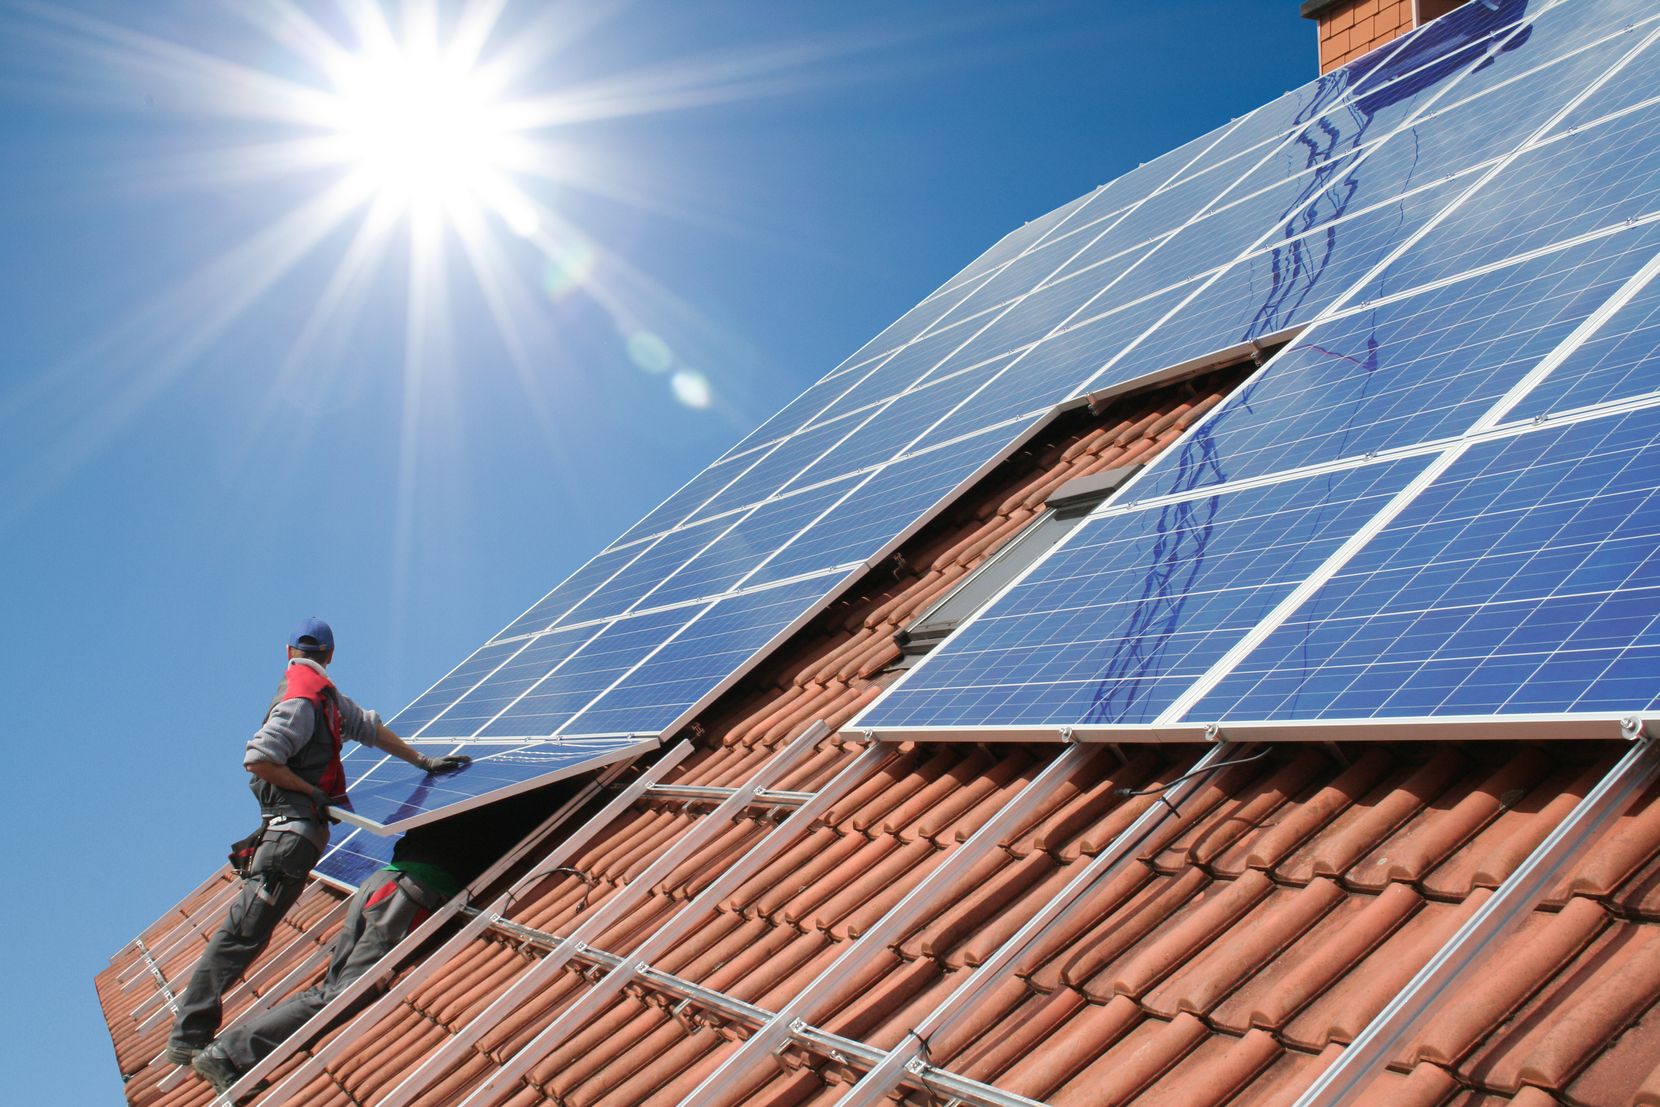 Auf dem Bild ist ein Mann auf einem Dach an einer Photovoltaikanlage werkelnd zu sehen.